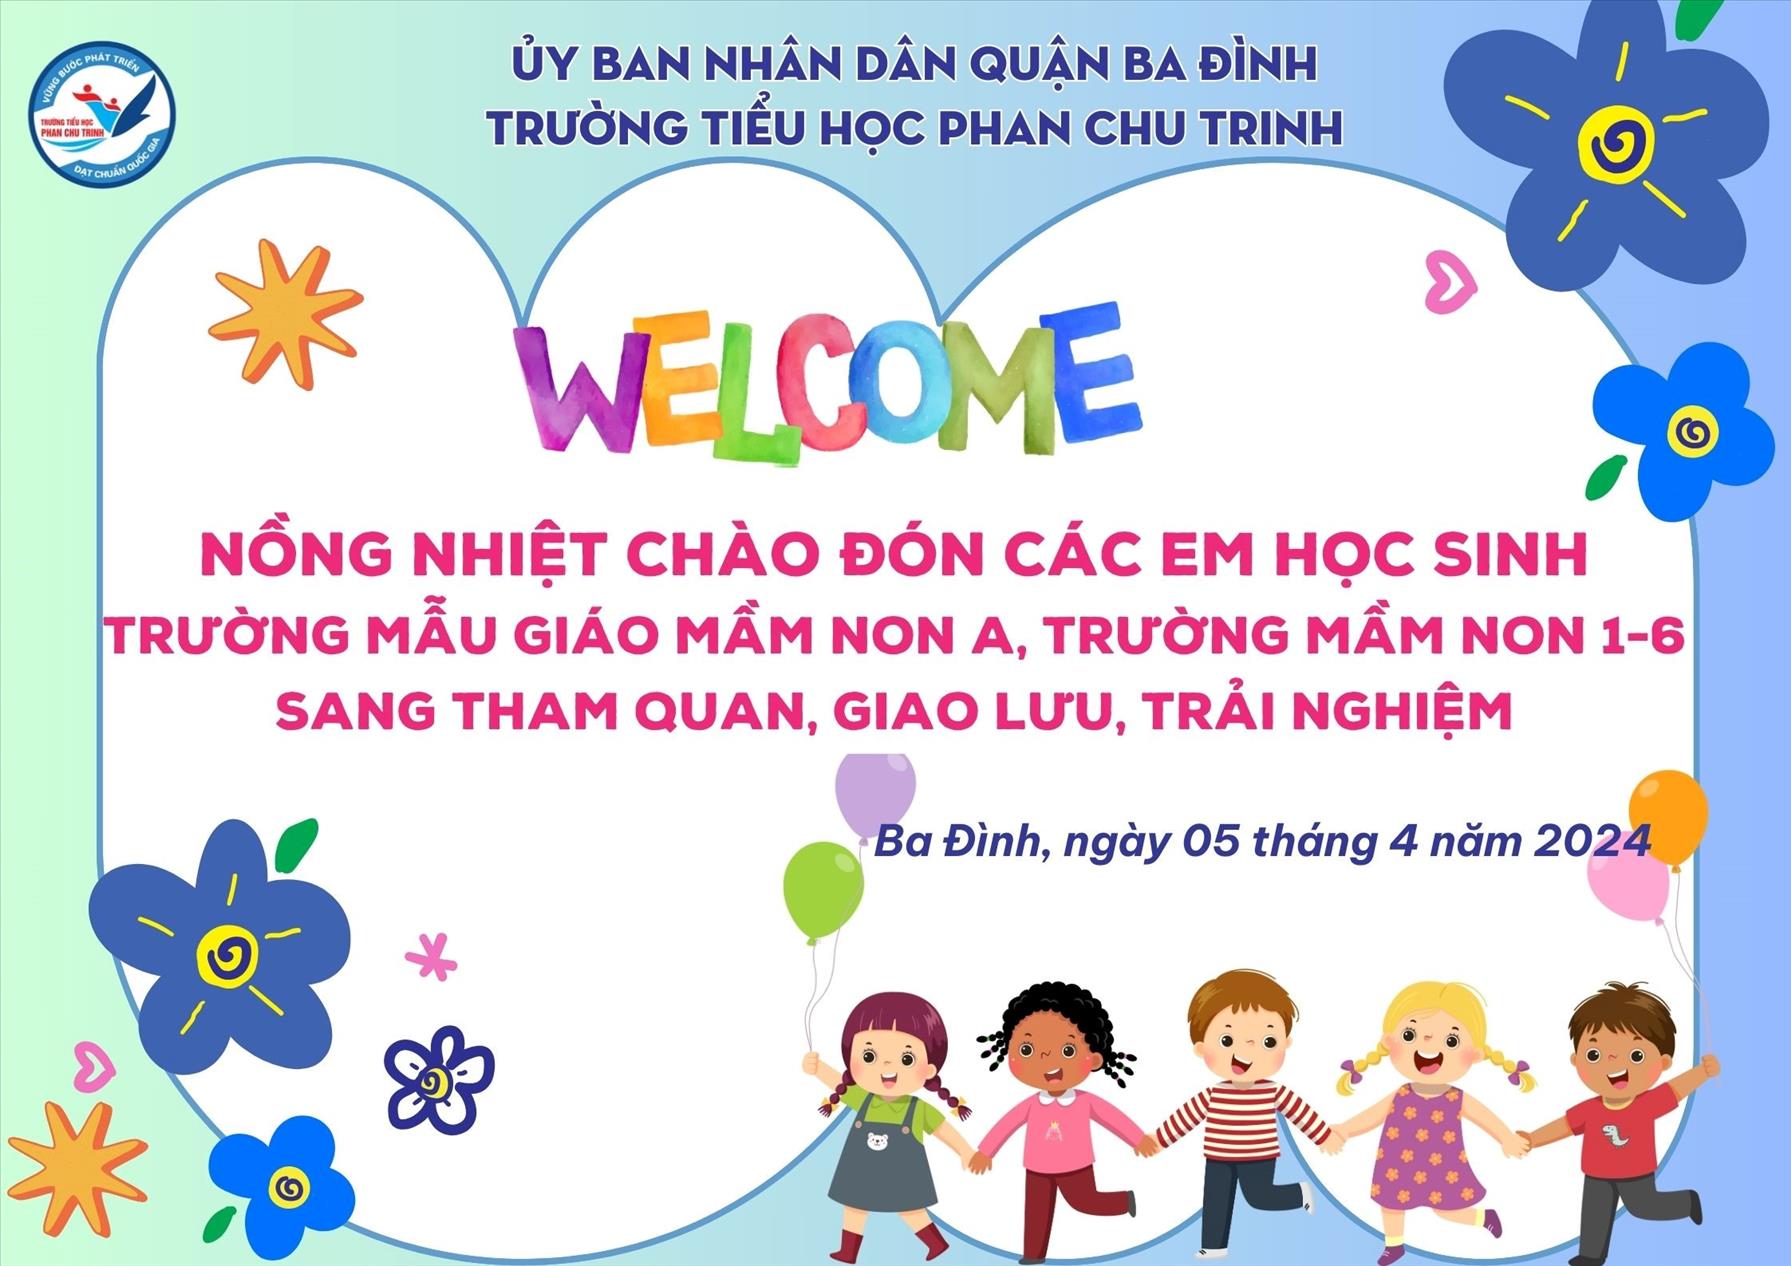 Trường TH Phan Chu Trinh hân hoan chào đón các em nhỏ Mẫu giáo Mầm non A và Mầm non 1/6 đến tham quan, giao lưu, trải nghiệm